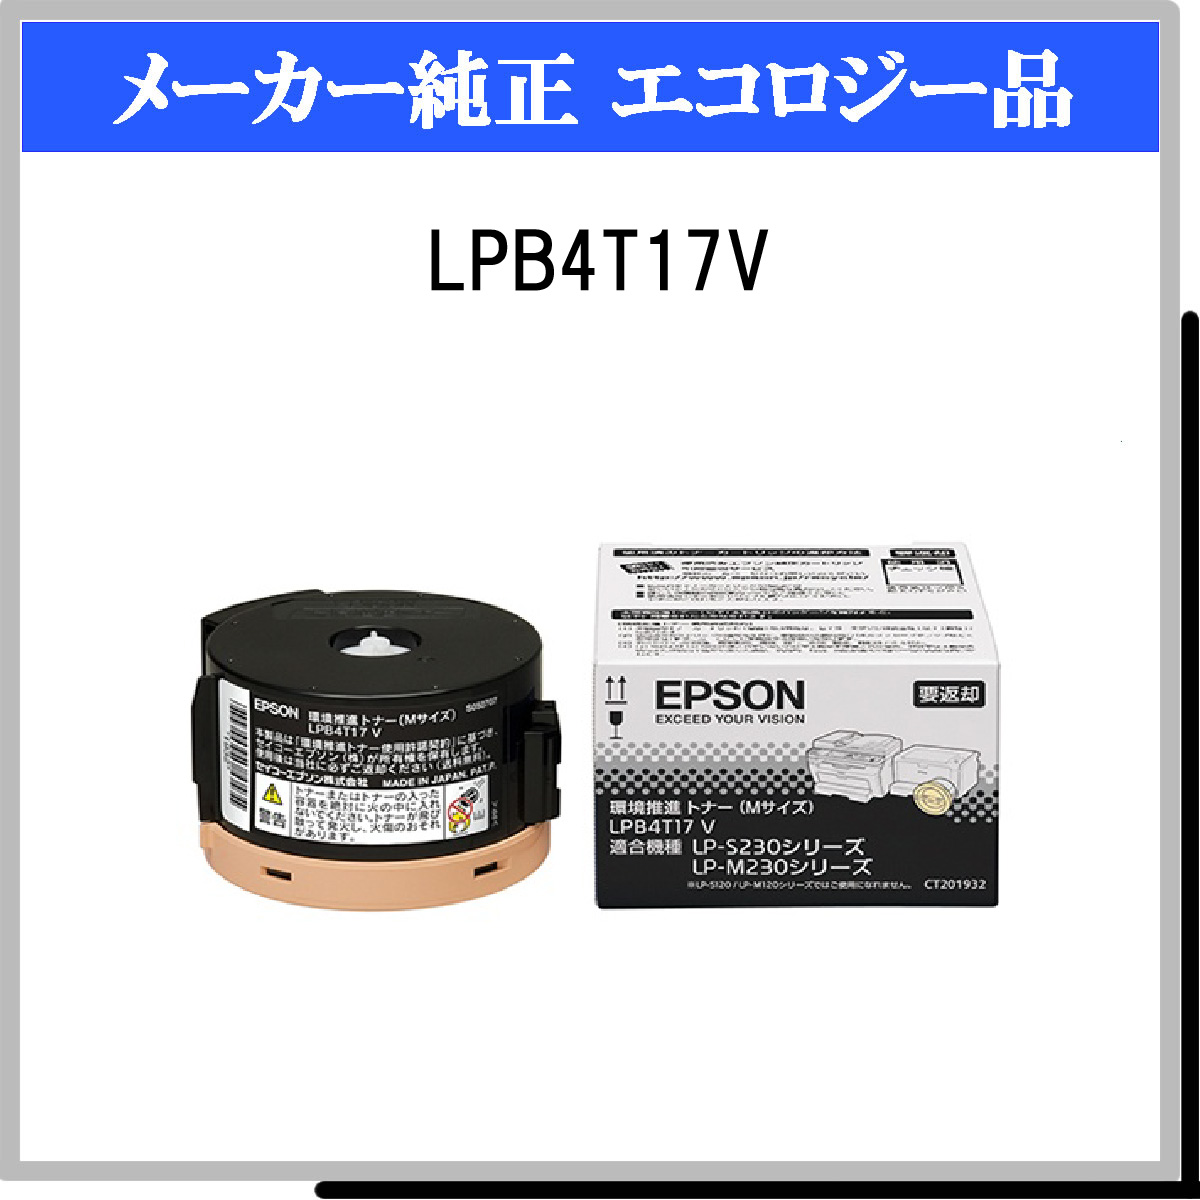 エプソン EPSON PLUS YU - 通販 - PayPayモール LPB4T17V LP-S230